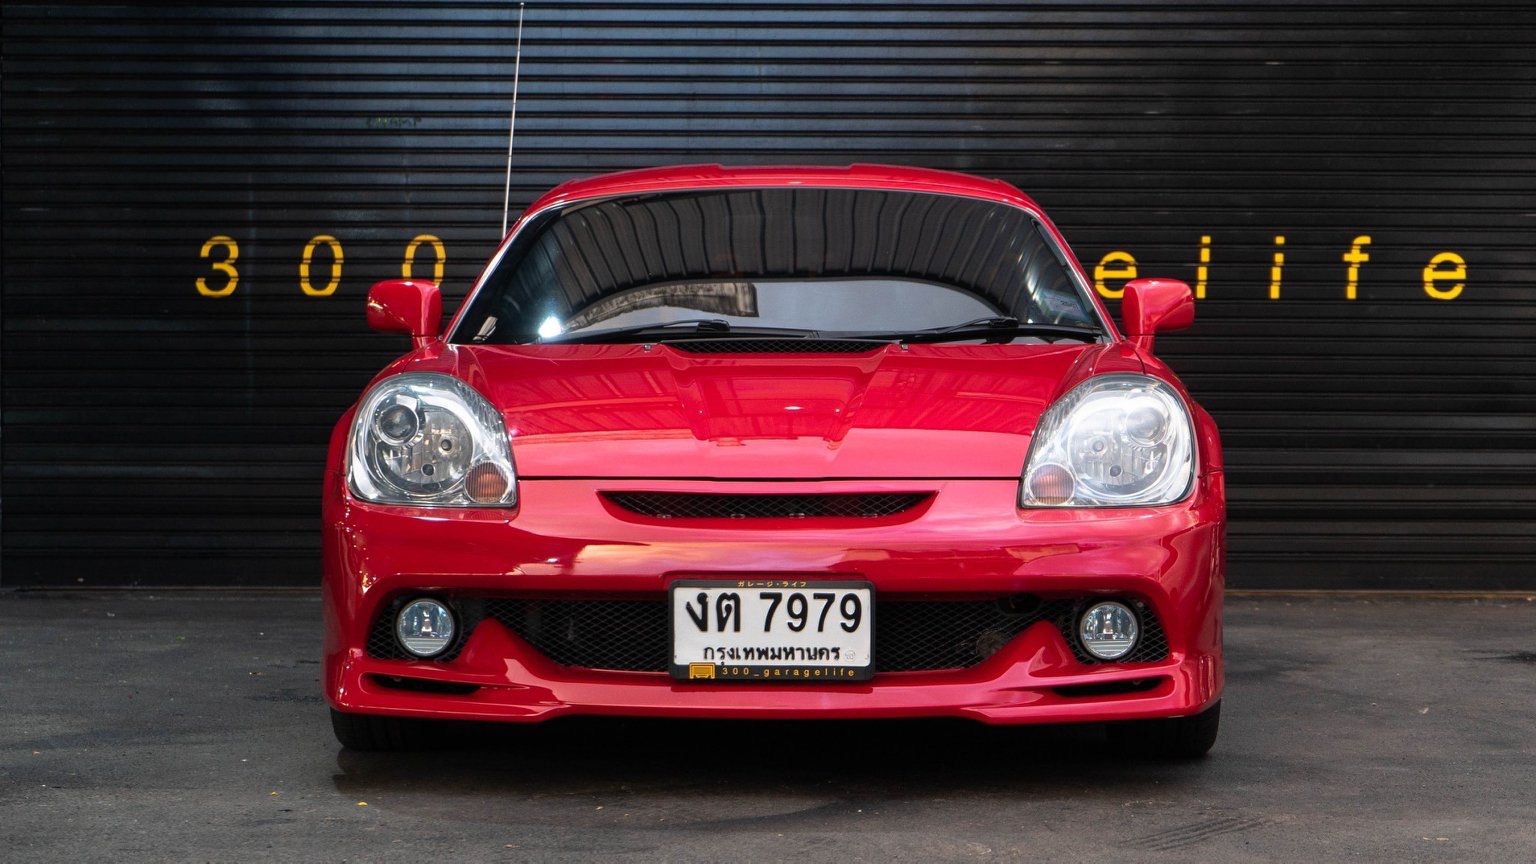 Toyota MR-S (W30) ปี 2004 สีแดง